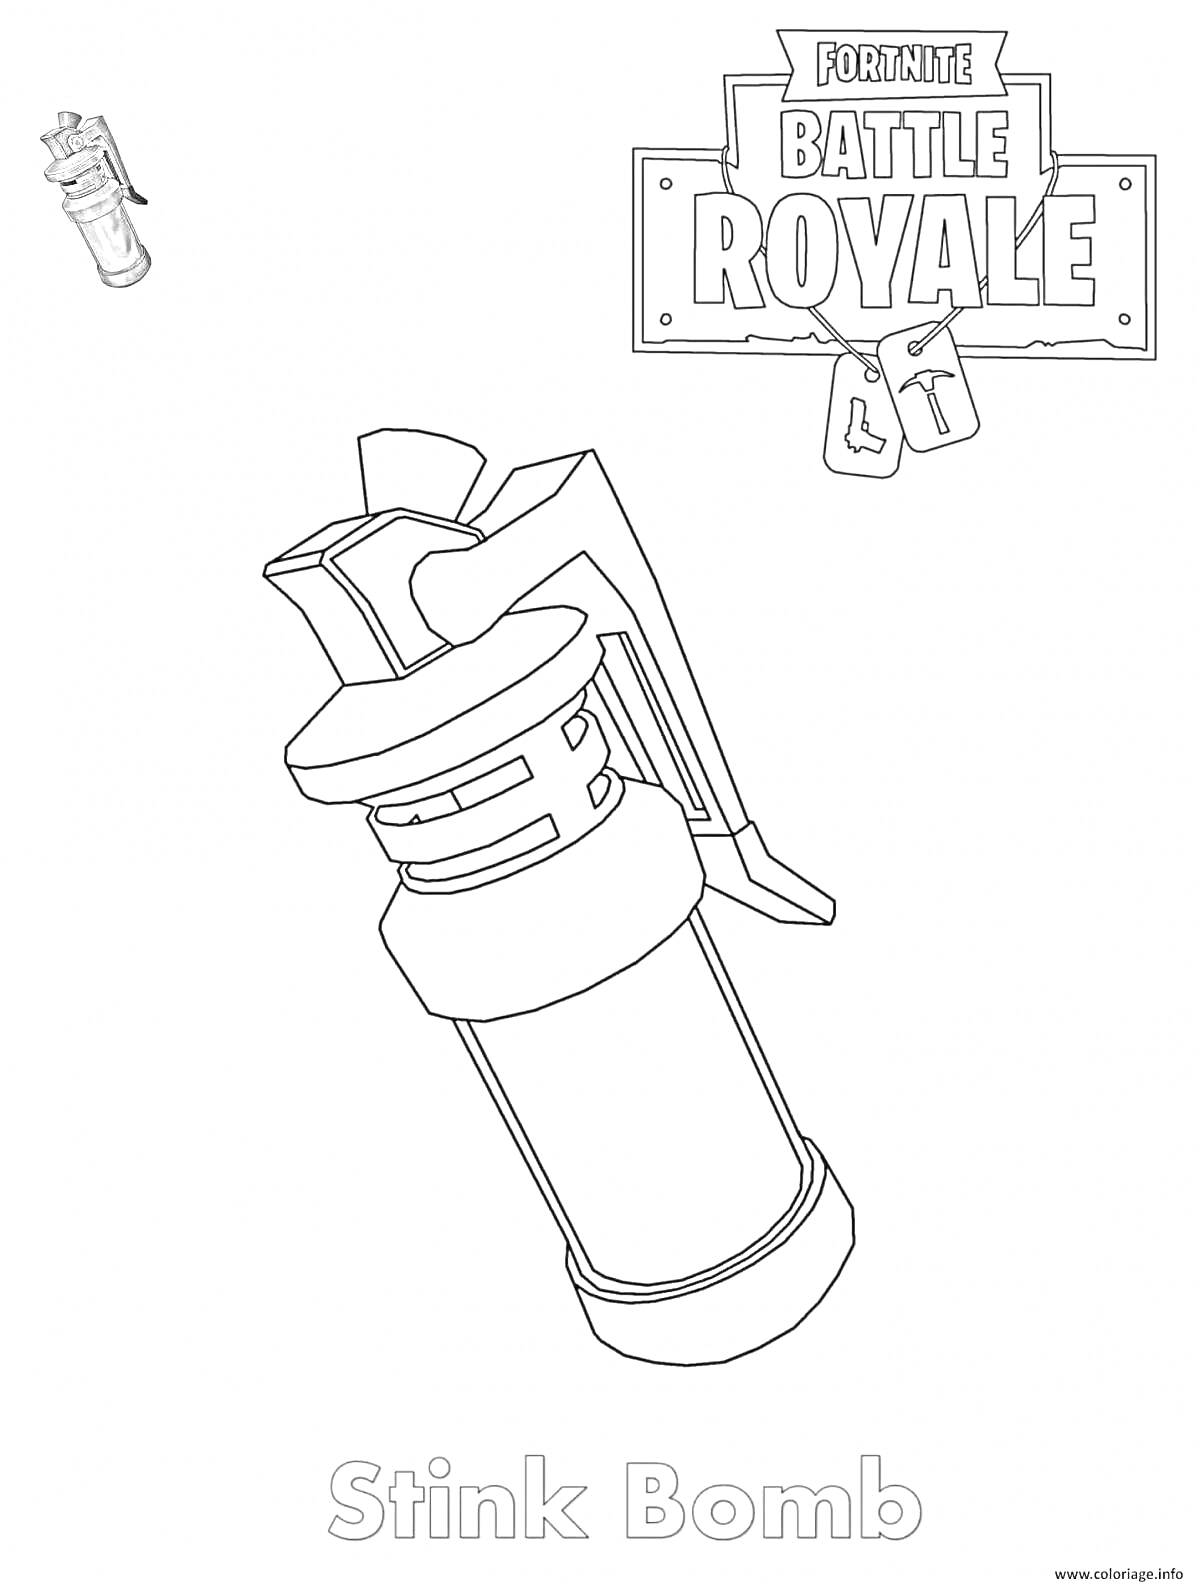 Раскраска Stink Bomb из Fortnite Battle Royale с логотипом и изображением гранаты